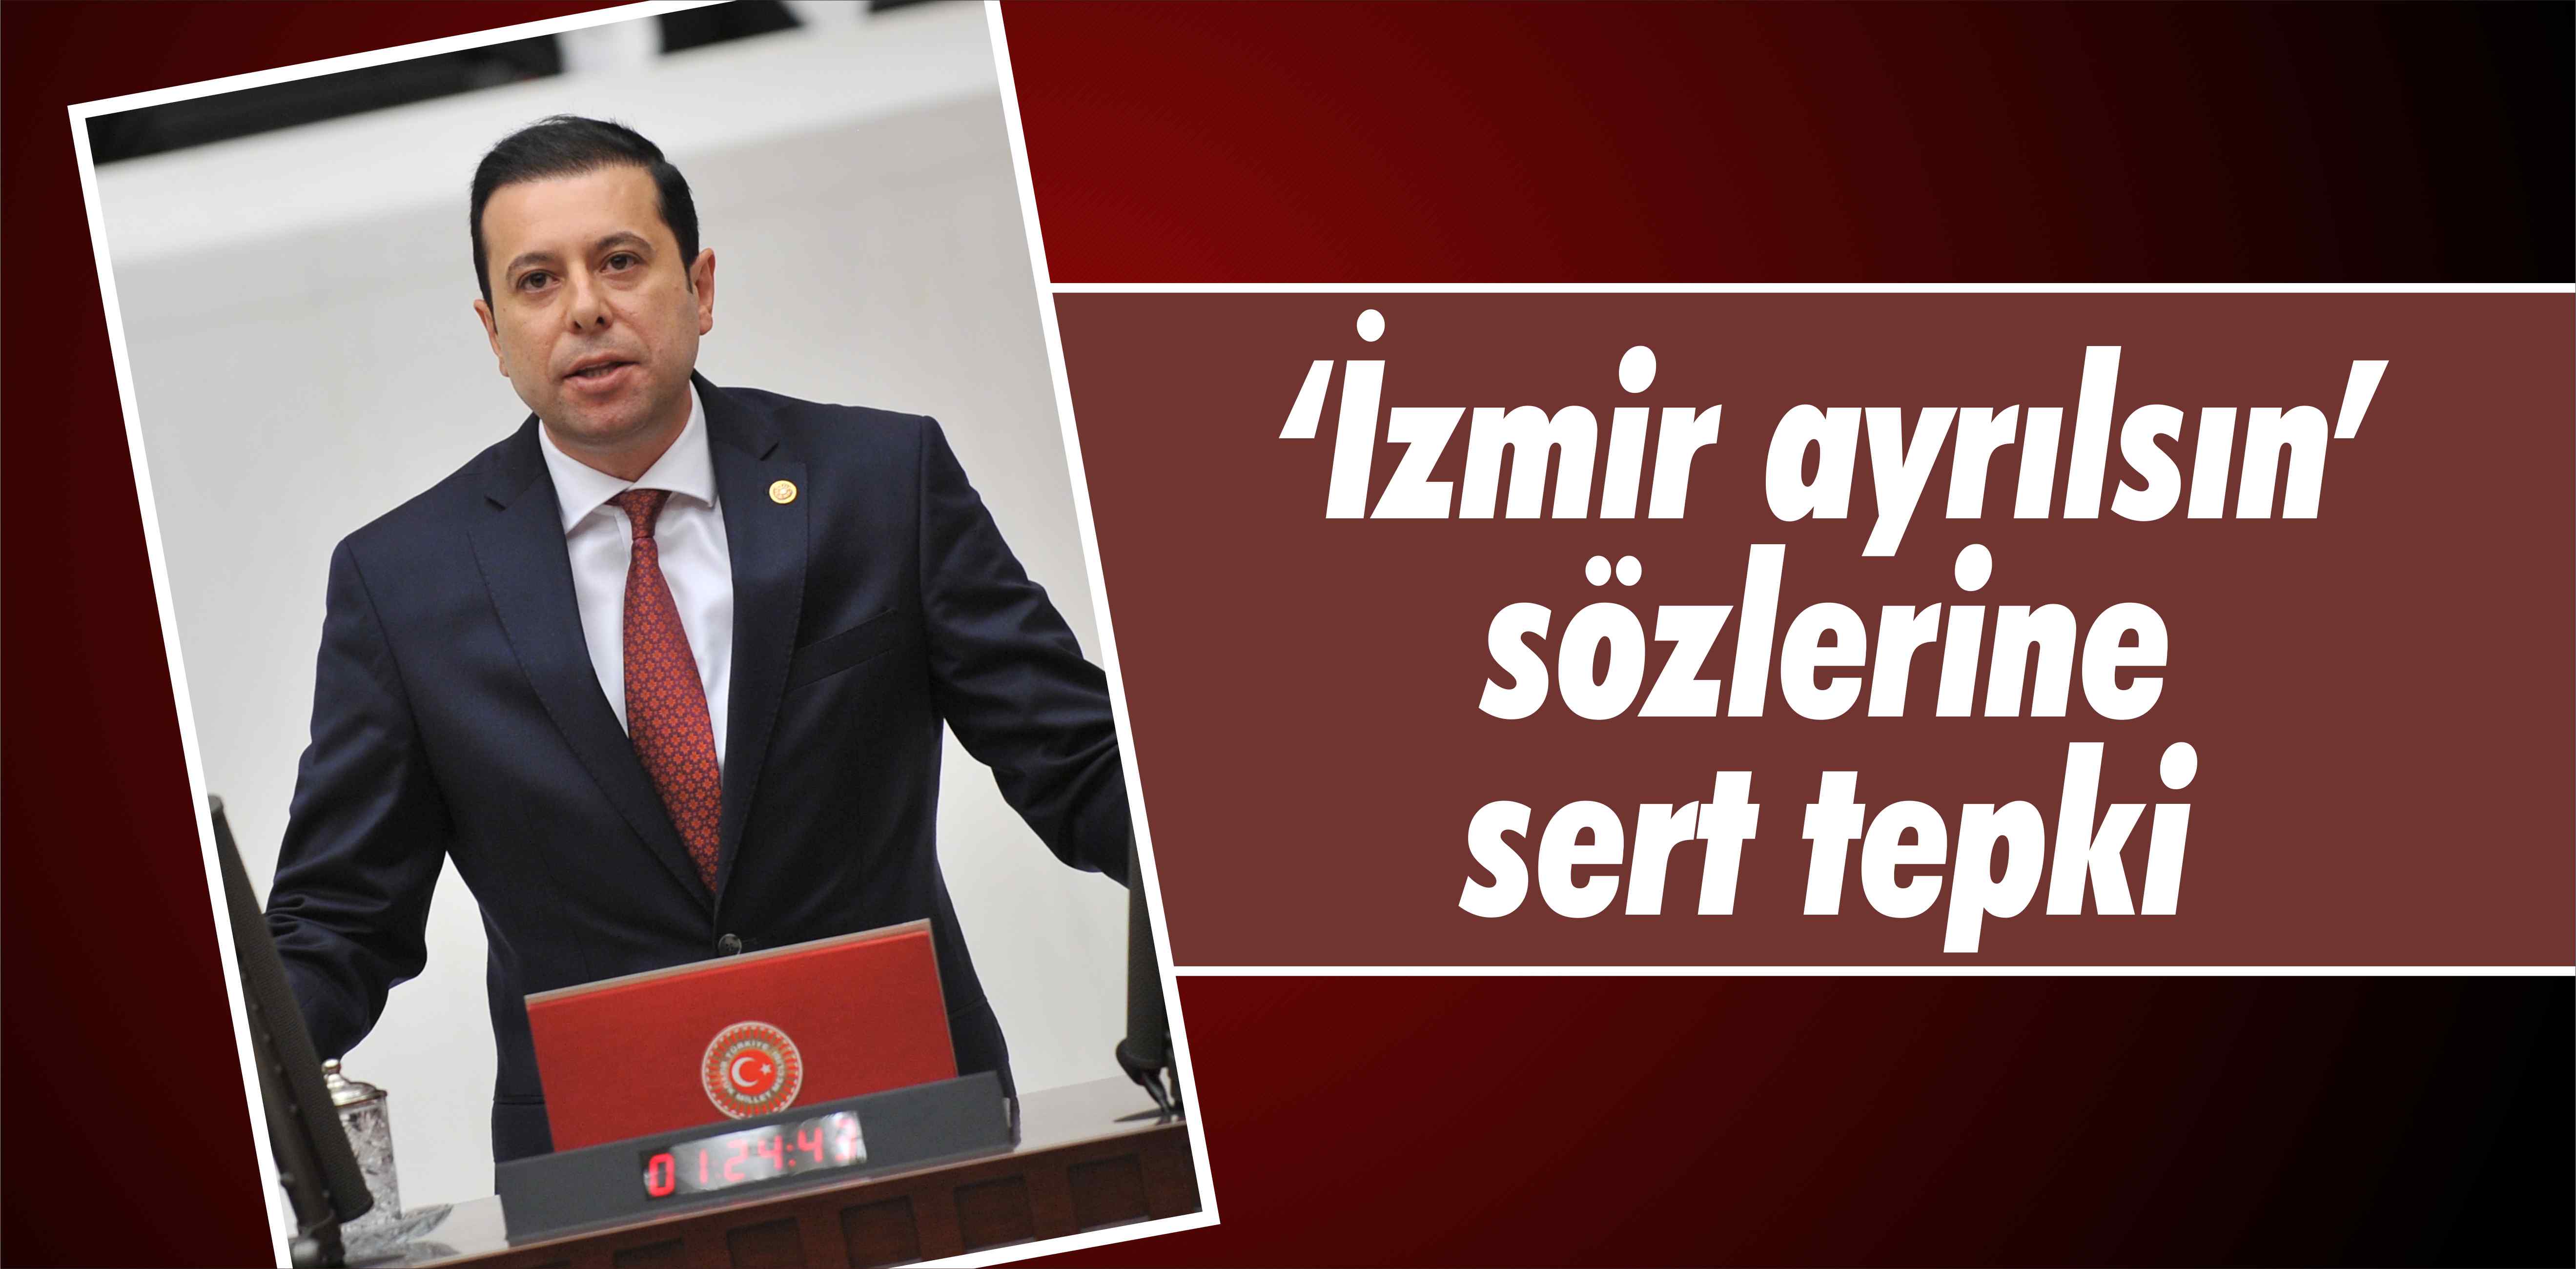 AK Partili Kaya’dan ‘İzmir ayrılsın’ tepkisi